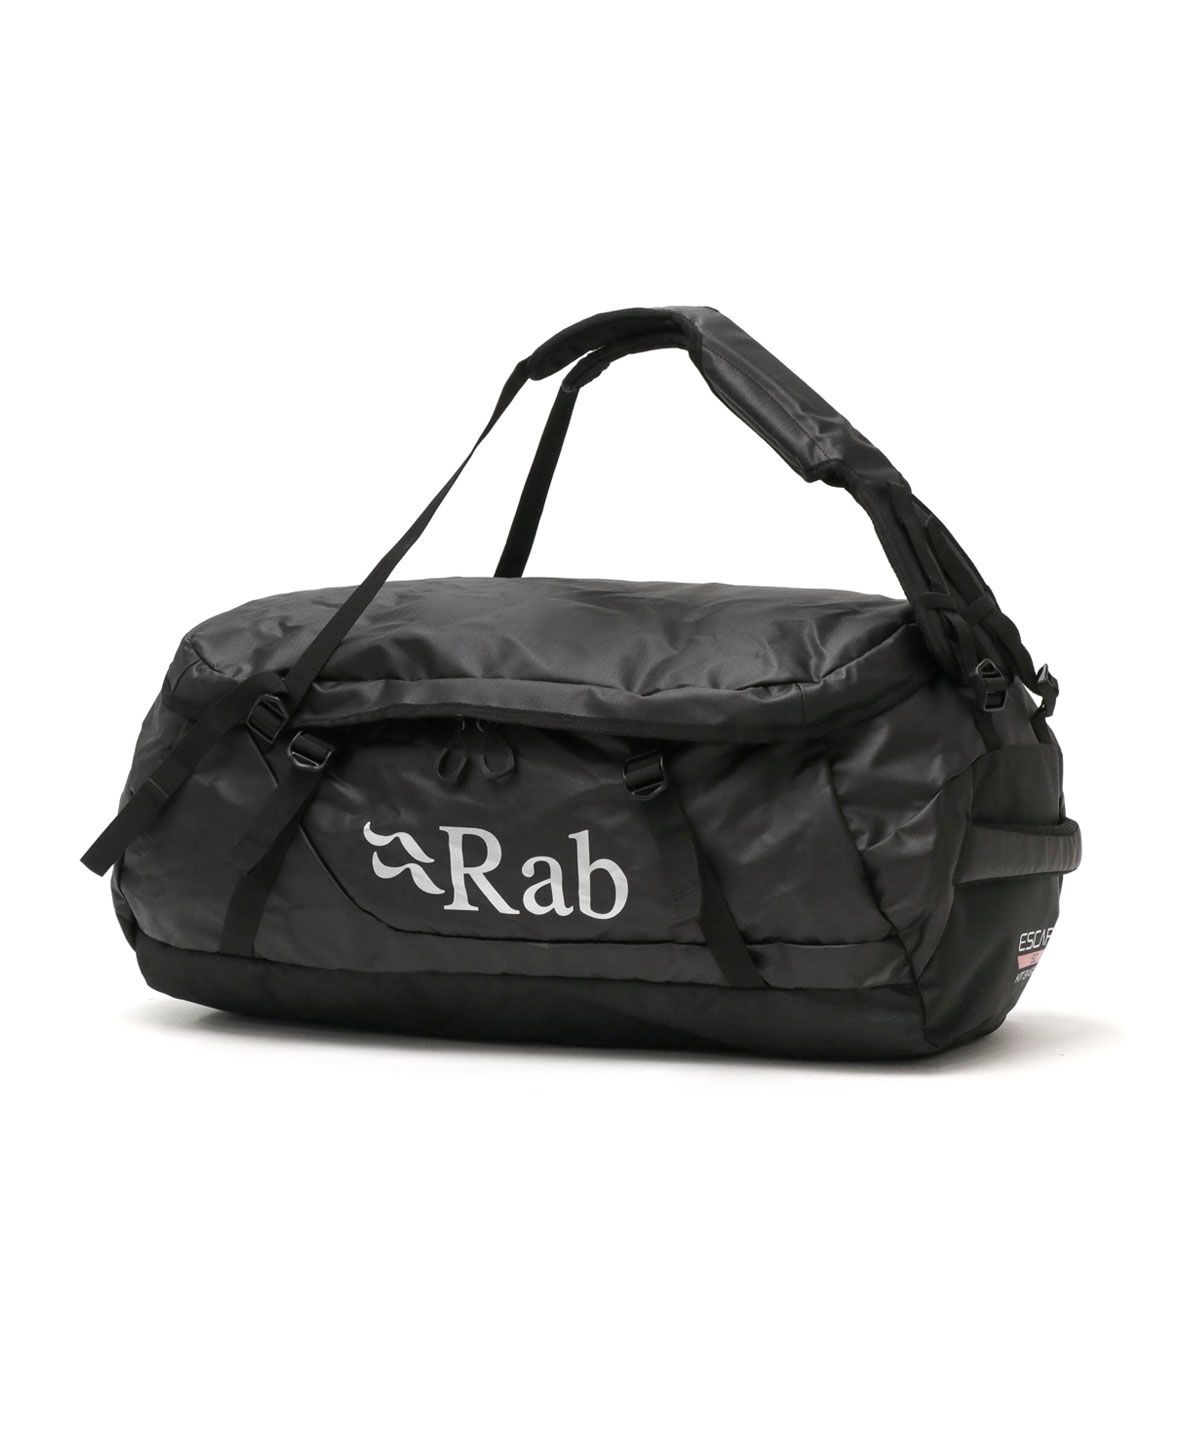 ラブ ボストンバッグ Rab Escape Kit Bag LT 50 ダッフルバッグ